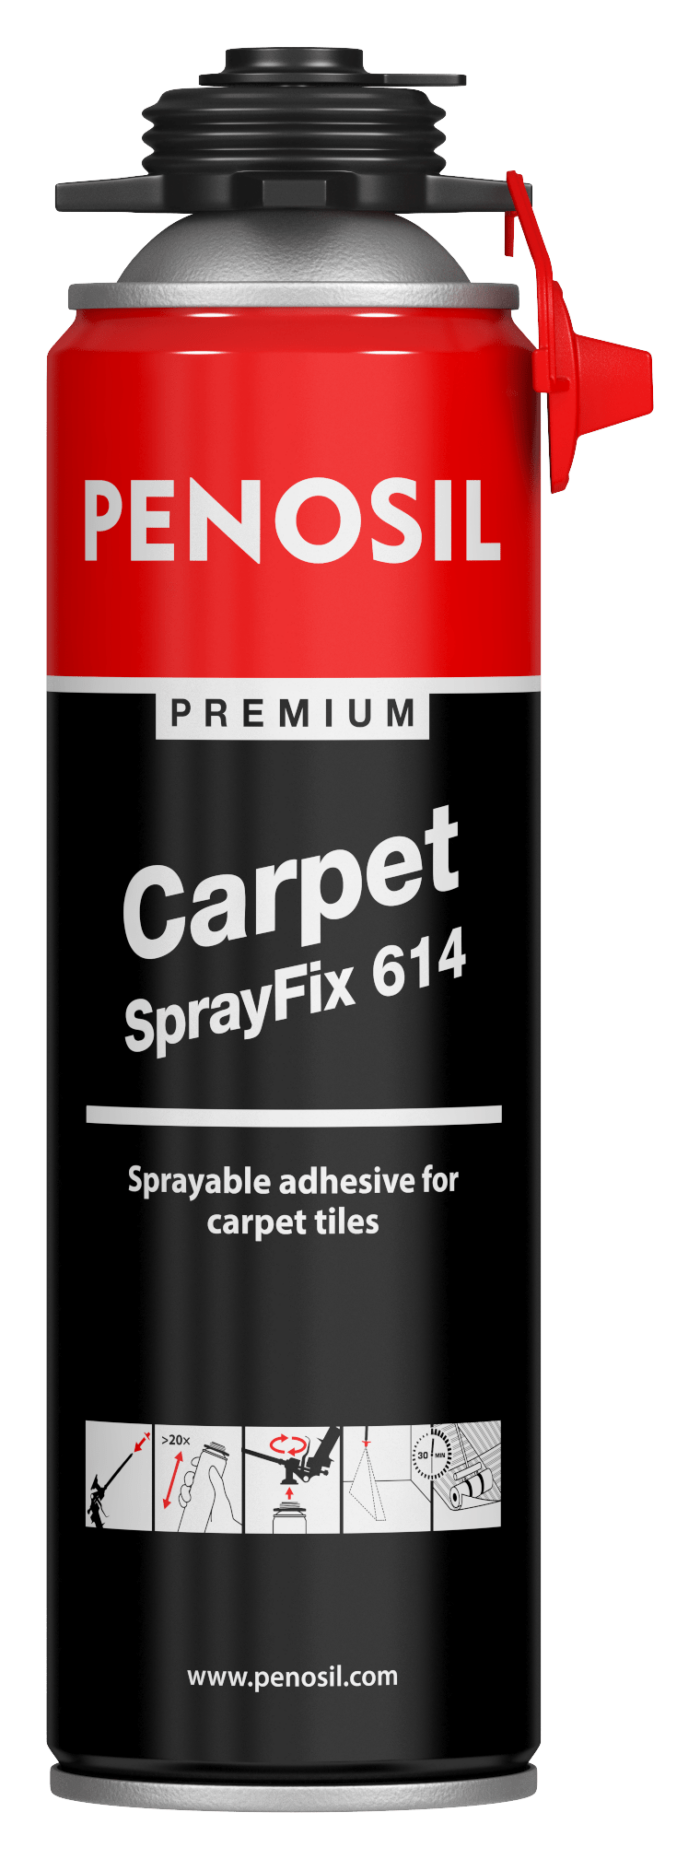 Premium Carpet SprayFix 614 pihustatav akrüülliim